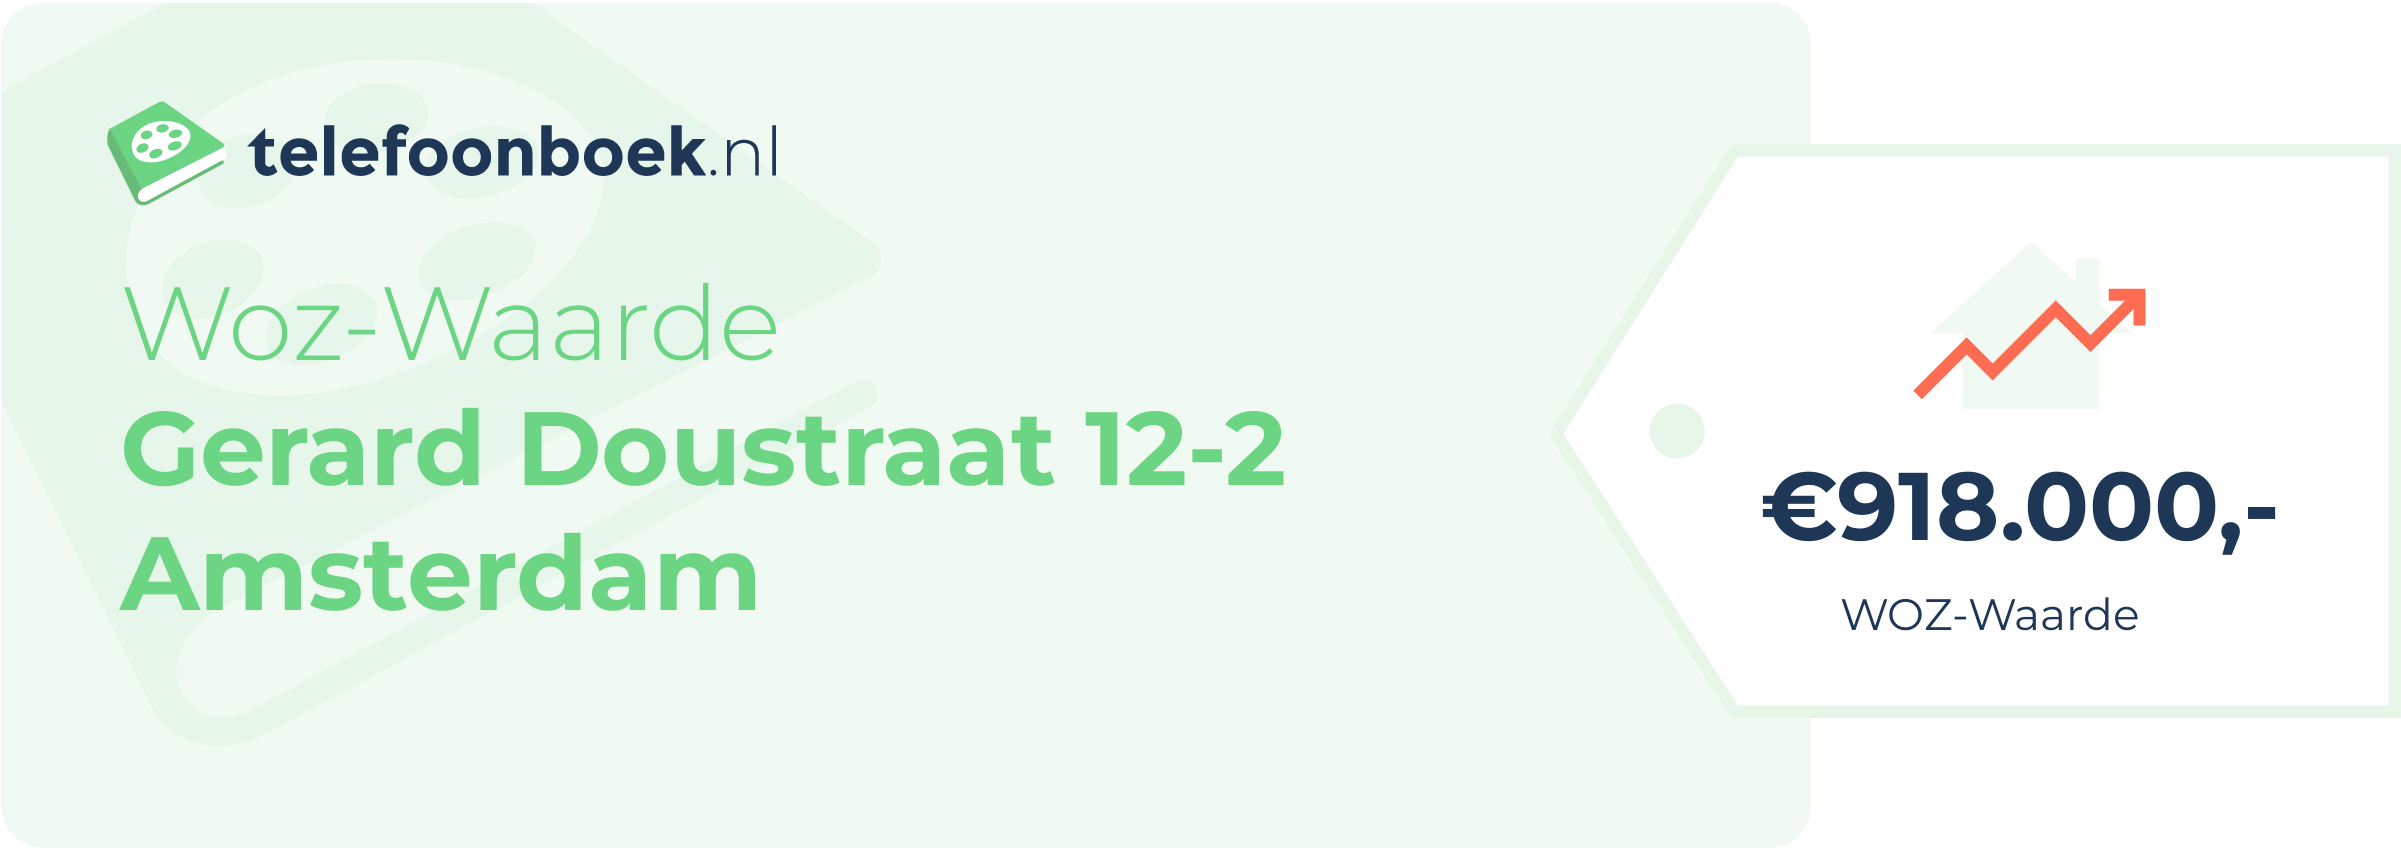 WOZ-waarde Gerard Doustraat 12-2 Amsterdam